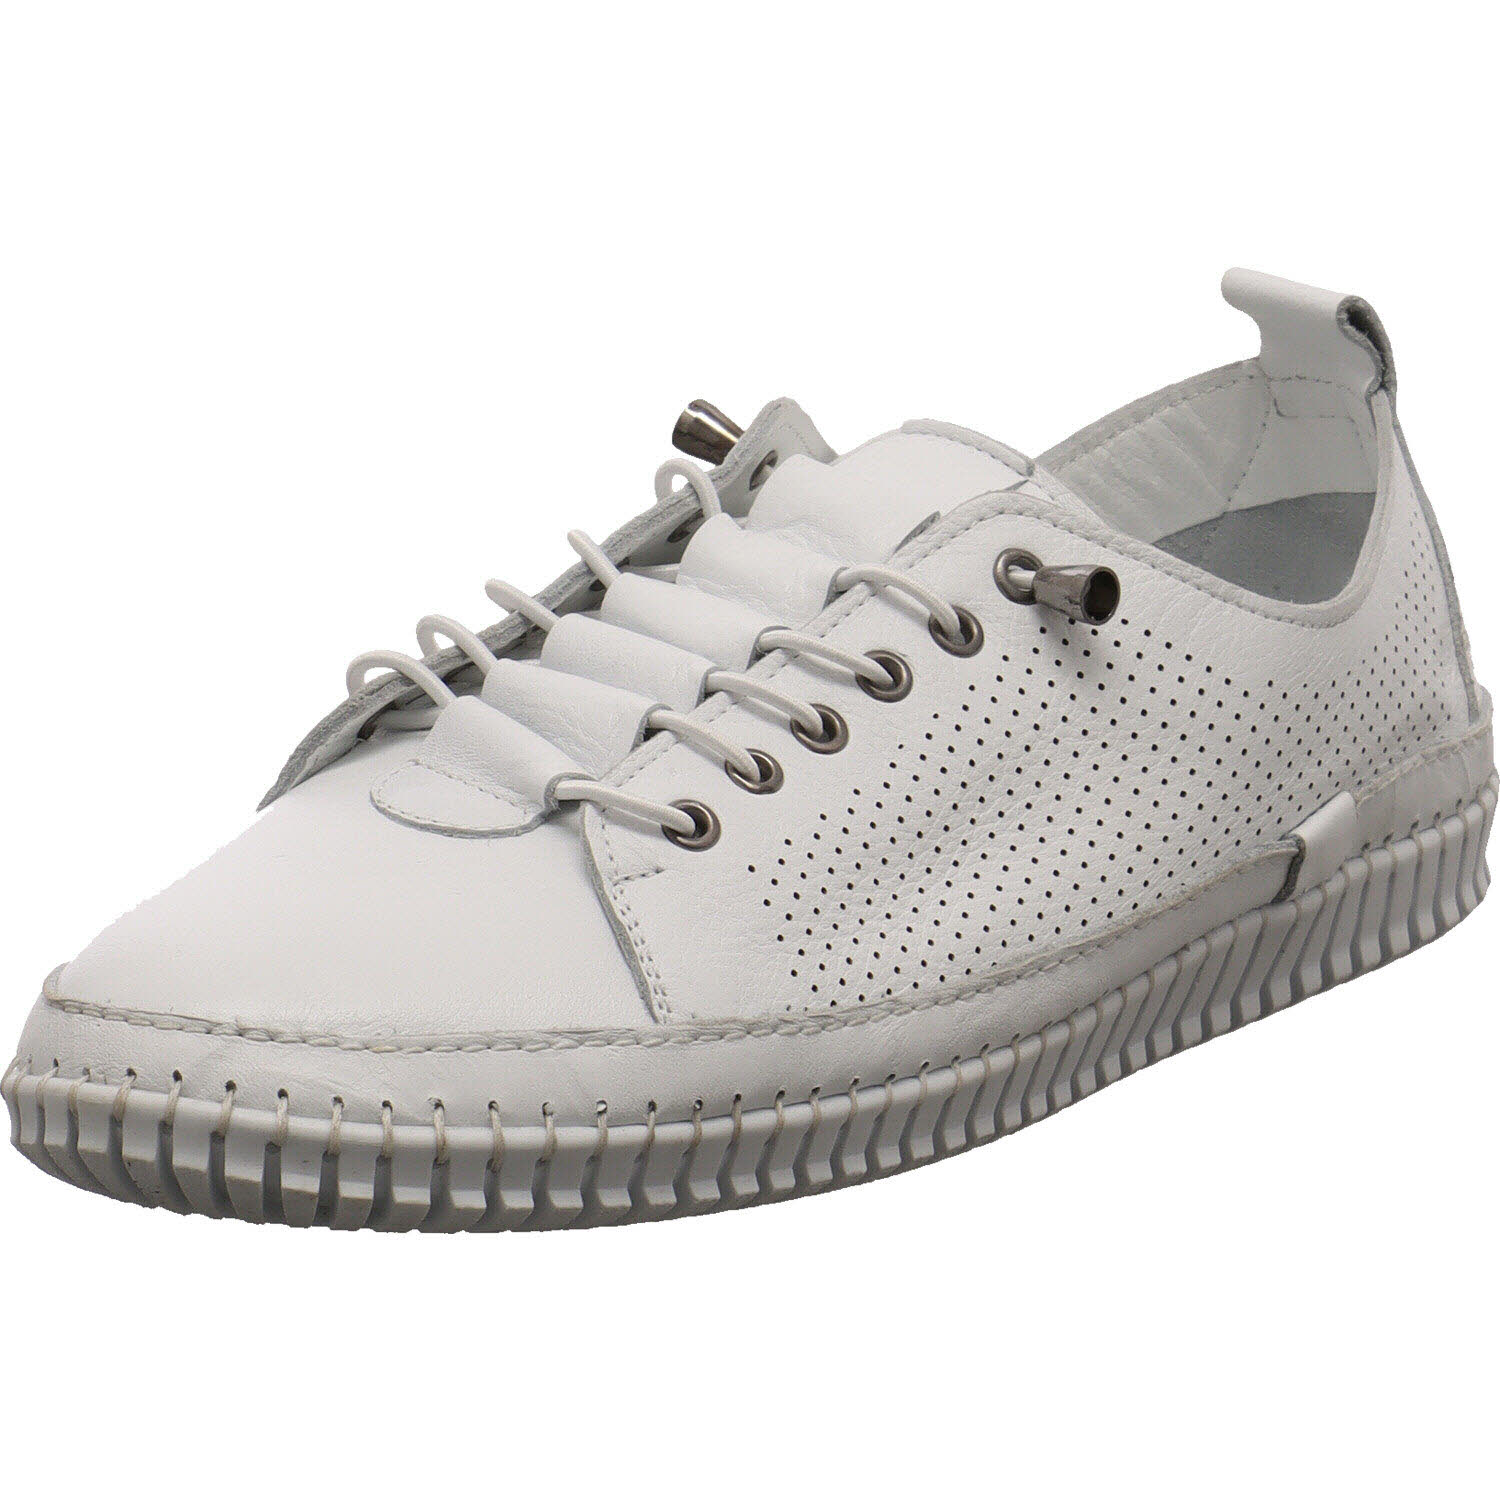 Damen Sneaker low von Cosmos Comfort auch in Weiß erhältlich